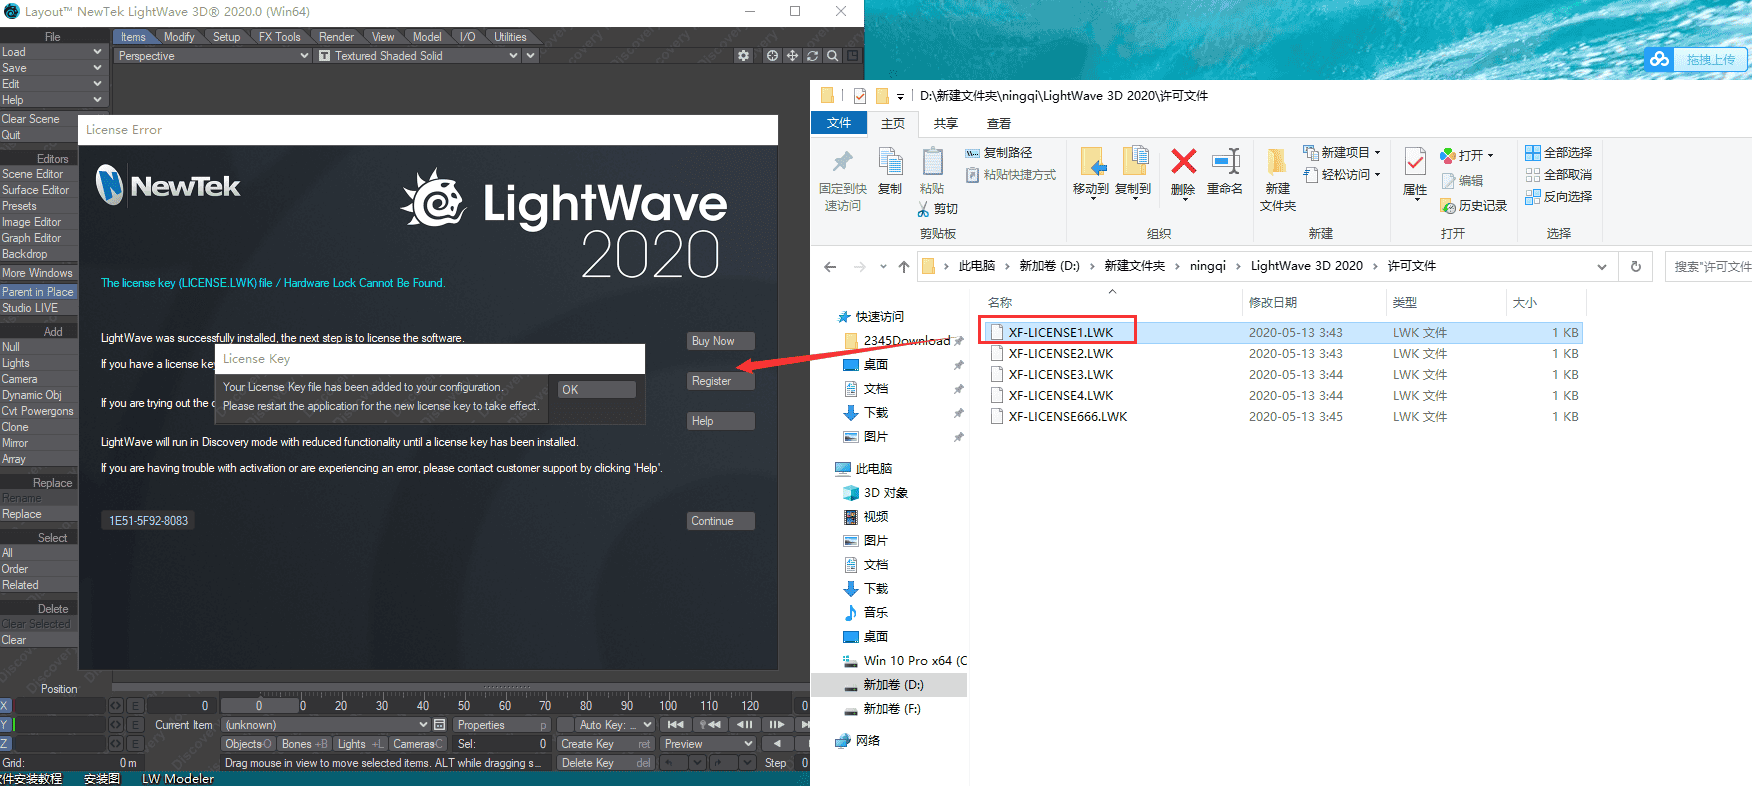 lightwave 3d 2020【附安装破解教程】英文破解版安装图文教程、破解注册方法